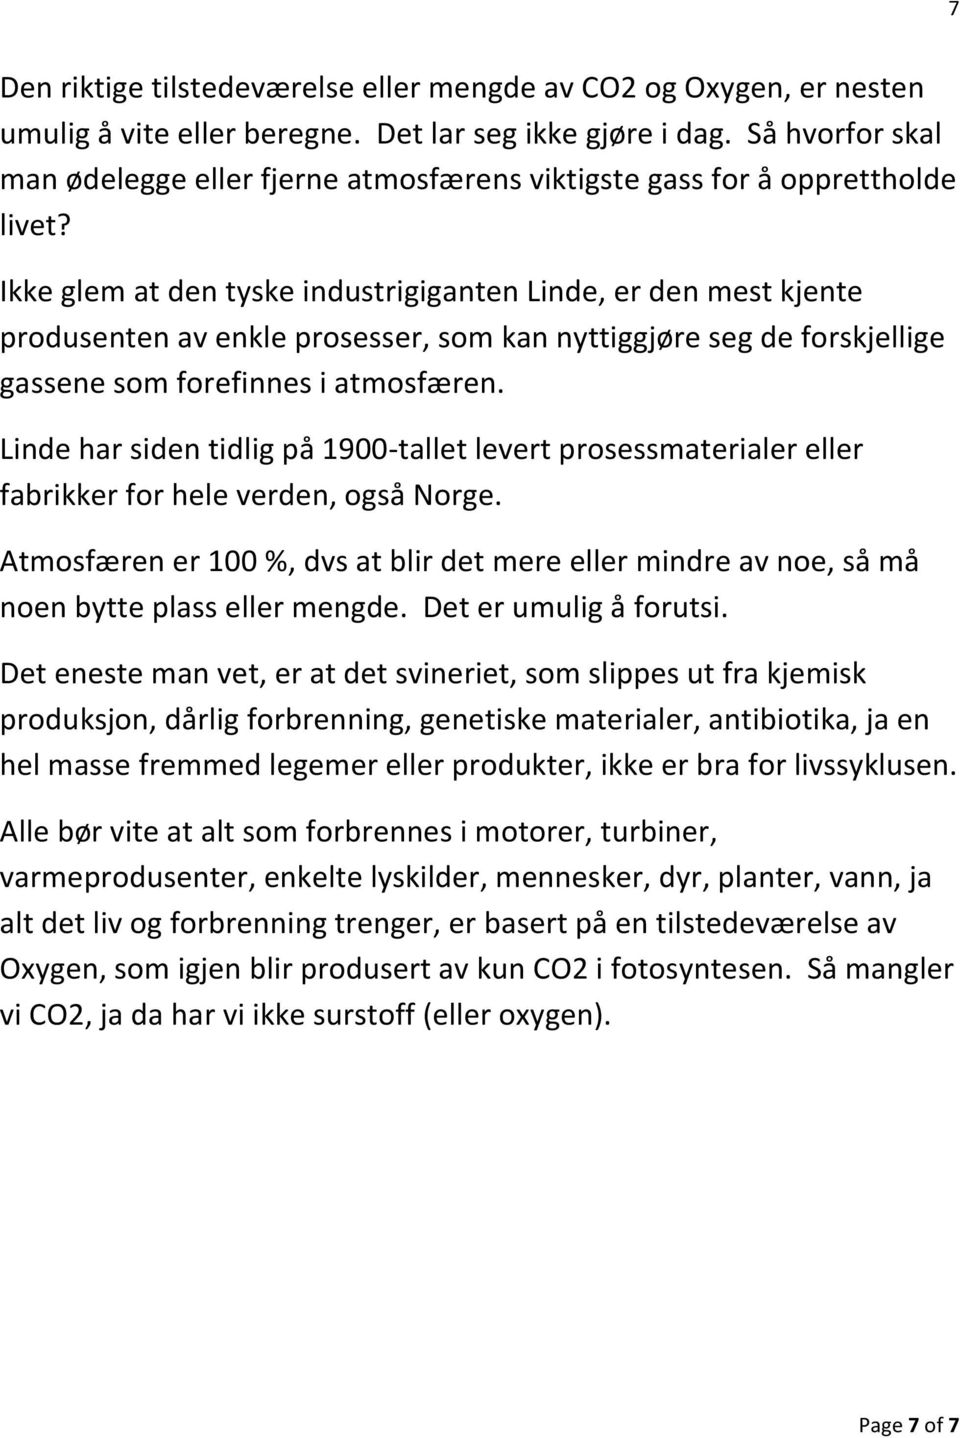 Ikke glem at den tyske industrigiganten Linde, er den mest kjente produsenten av enkle prosesser, som kan nyttiggjøre seg de forskjellige gassene som forefinnes i atmosfæren.